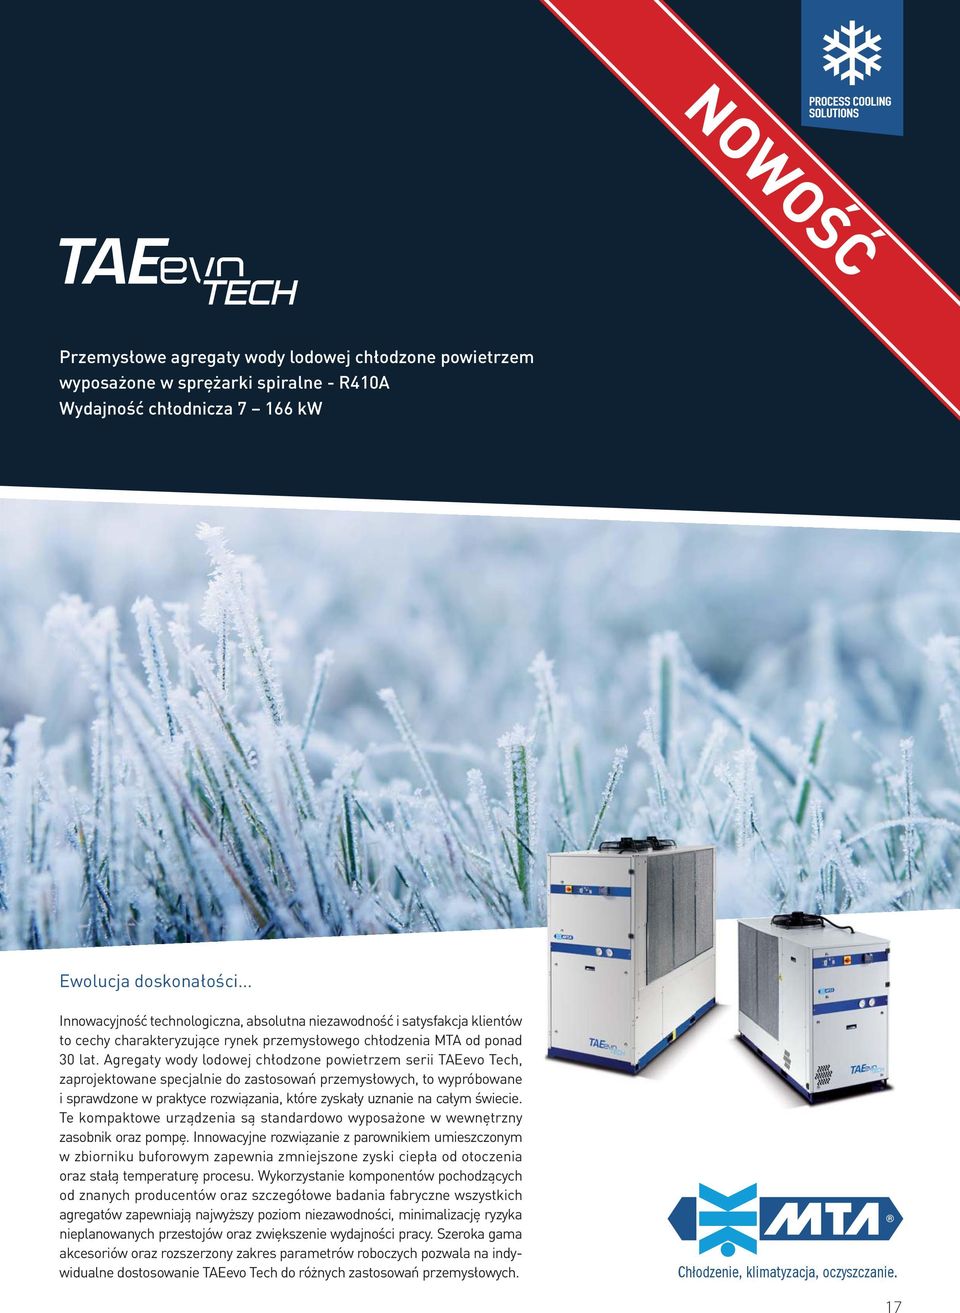 Agregaty wody lodowej chłodzone powietrzem serii TAEevo Tech, zaprojektowane specjalnie do zastosowań przemysłowych, to wypróbowane i sprawdzone w praktyce rozwiązania, które zyskały uznanie na całym